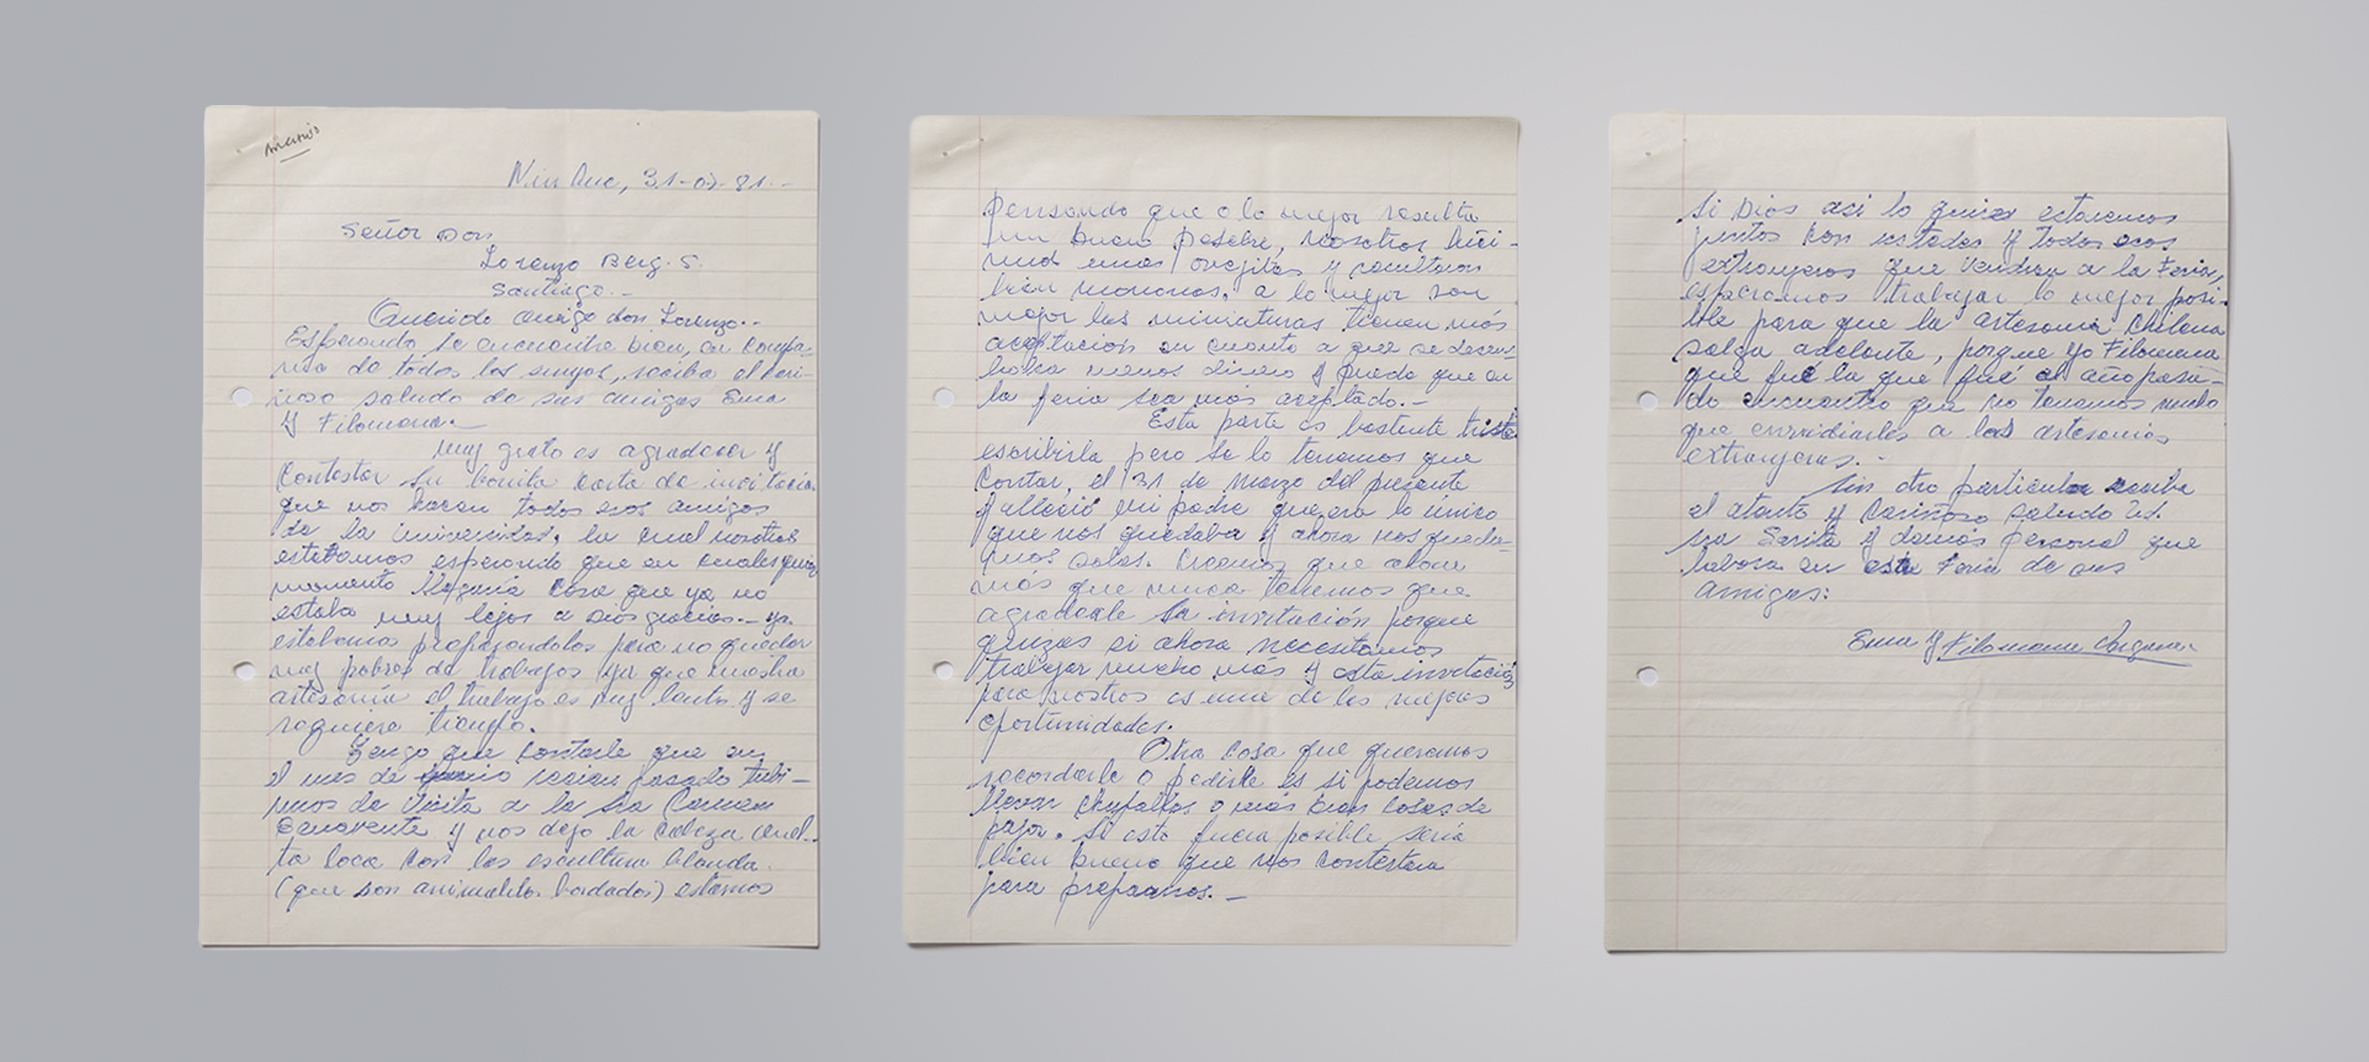 CABECERA Carta de Ema y Filomena Vergara Ninhue Region de Nuble 1983 Archivo Artesania UC